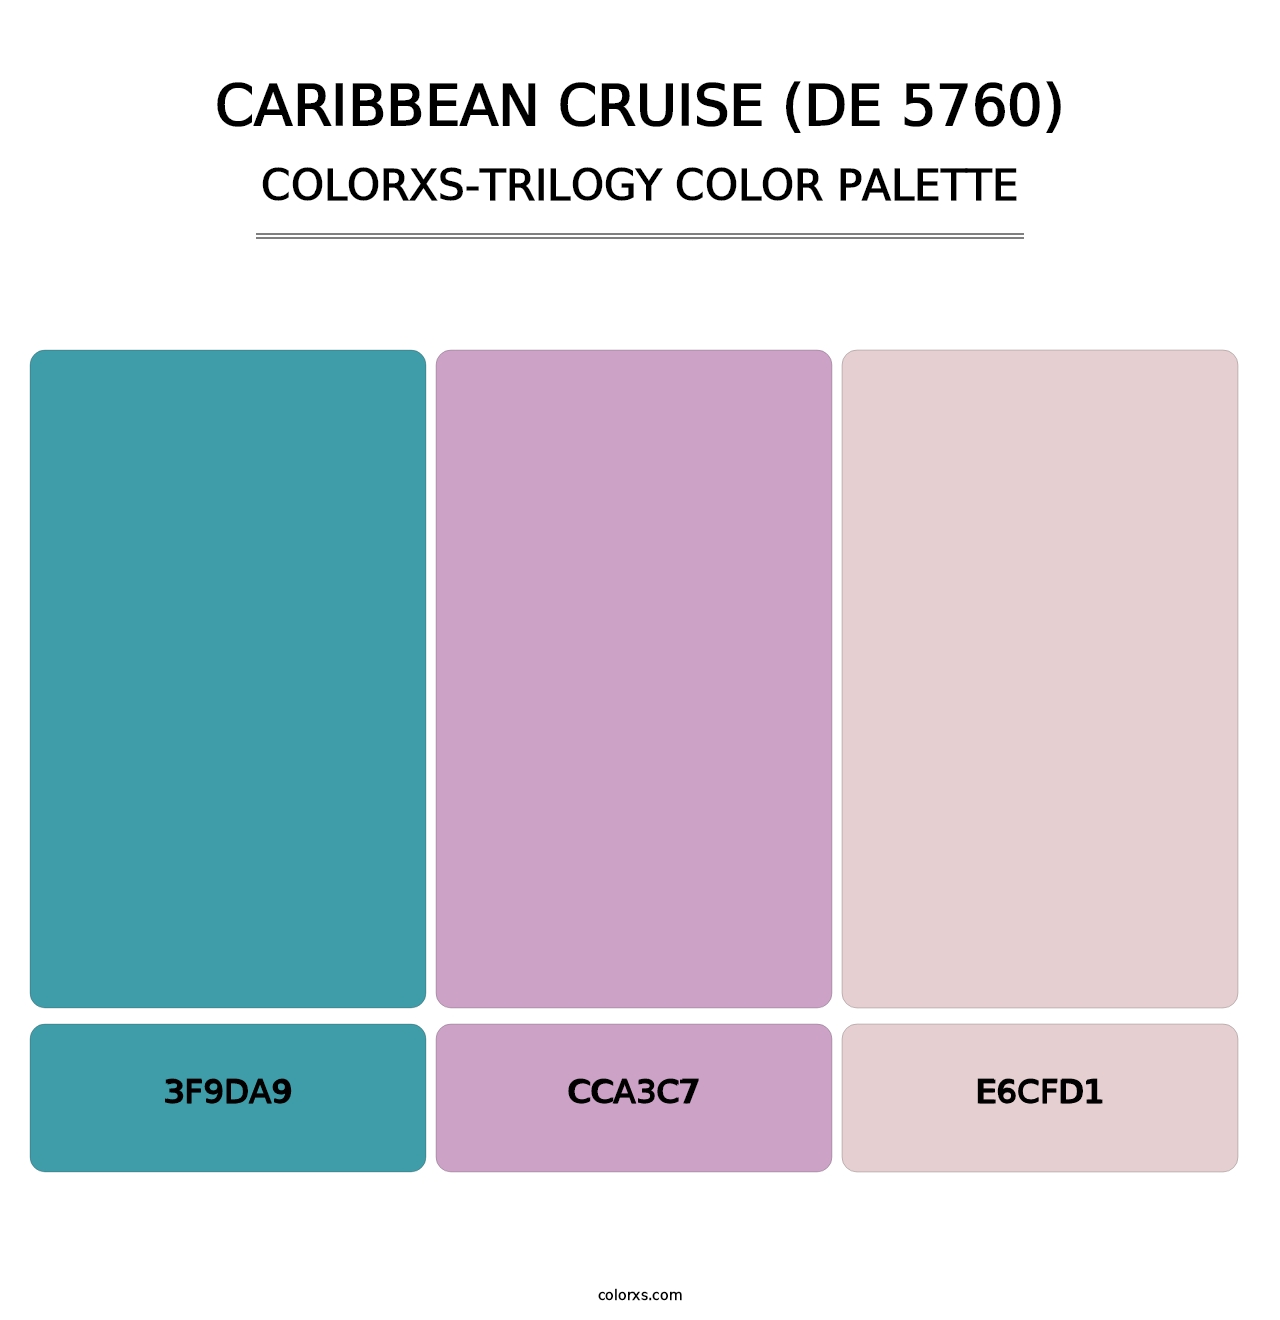 Caribbean Cruise (DE 5760) - Colorxs Trilogy Palette